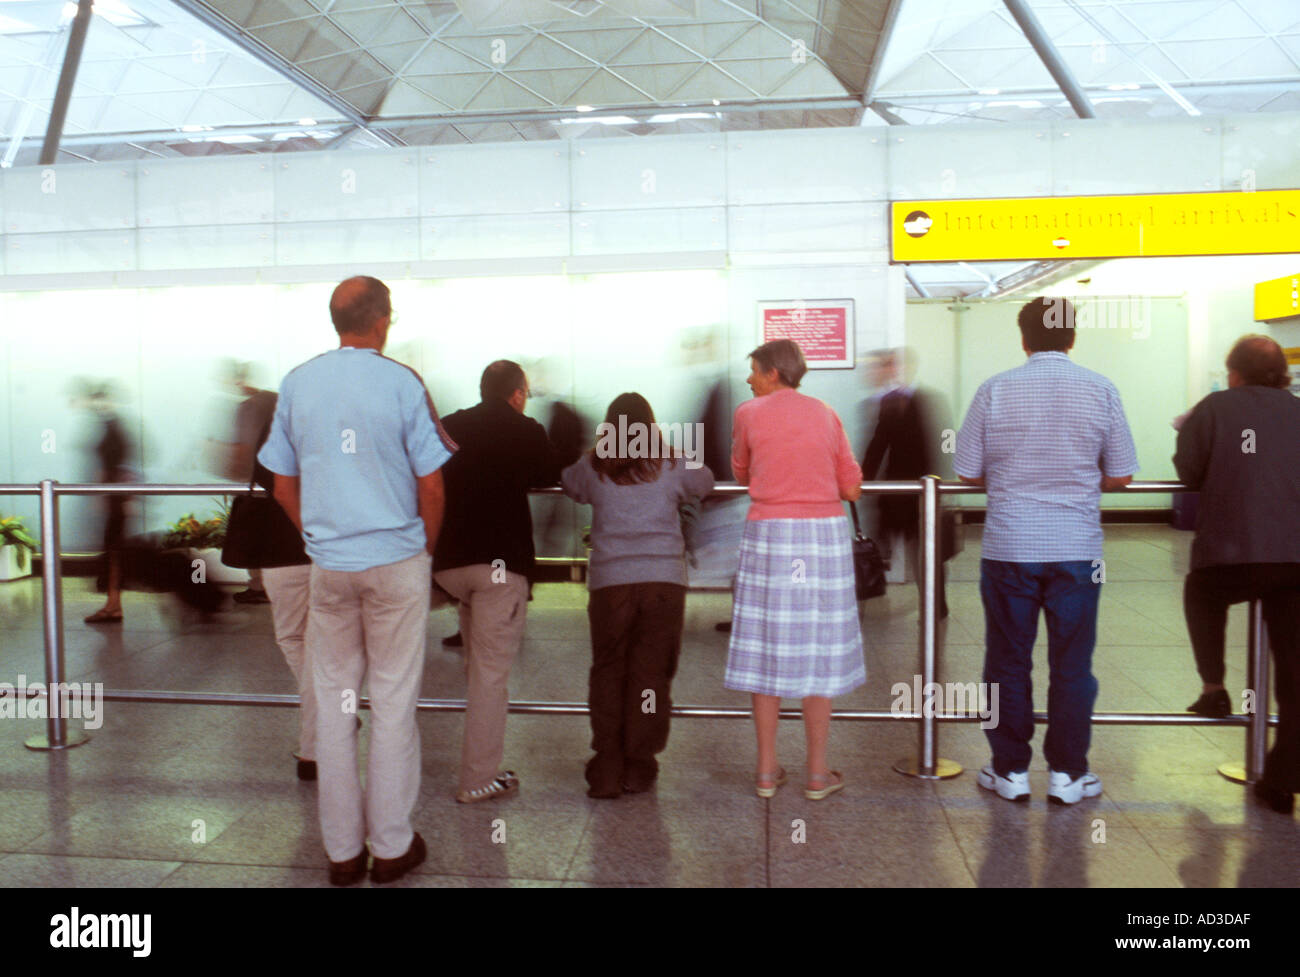 Les gens qui attendent pour recueillir et rencontrez les passagers du terminal des arrivées de l'aéroport de Stansted, Royaume-Uni Banque D'Images